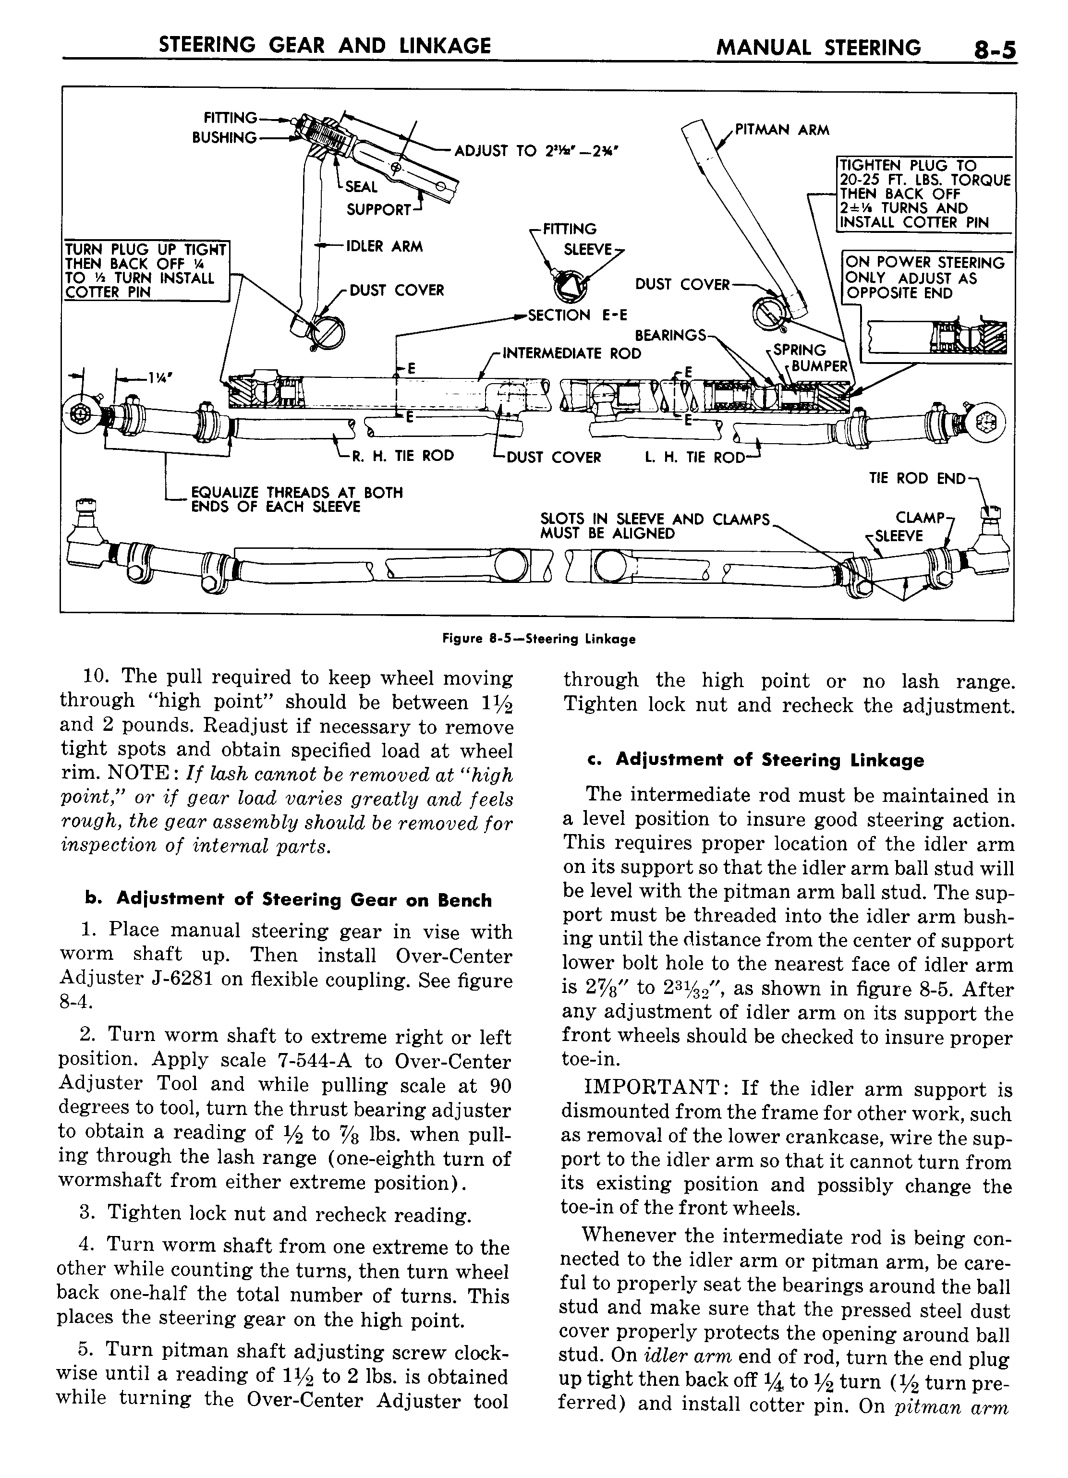 n_09 1957 Buick Shop Manual - Steering-005-005.jpg